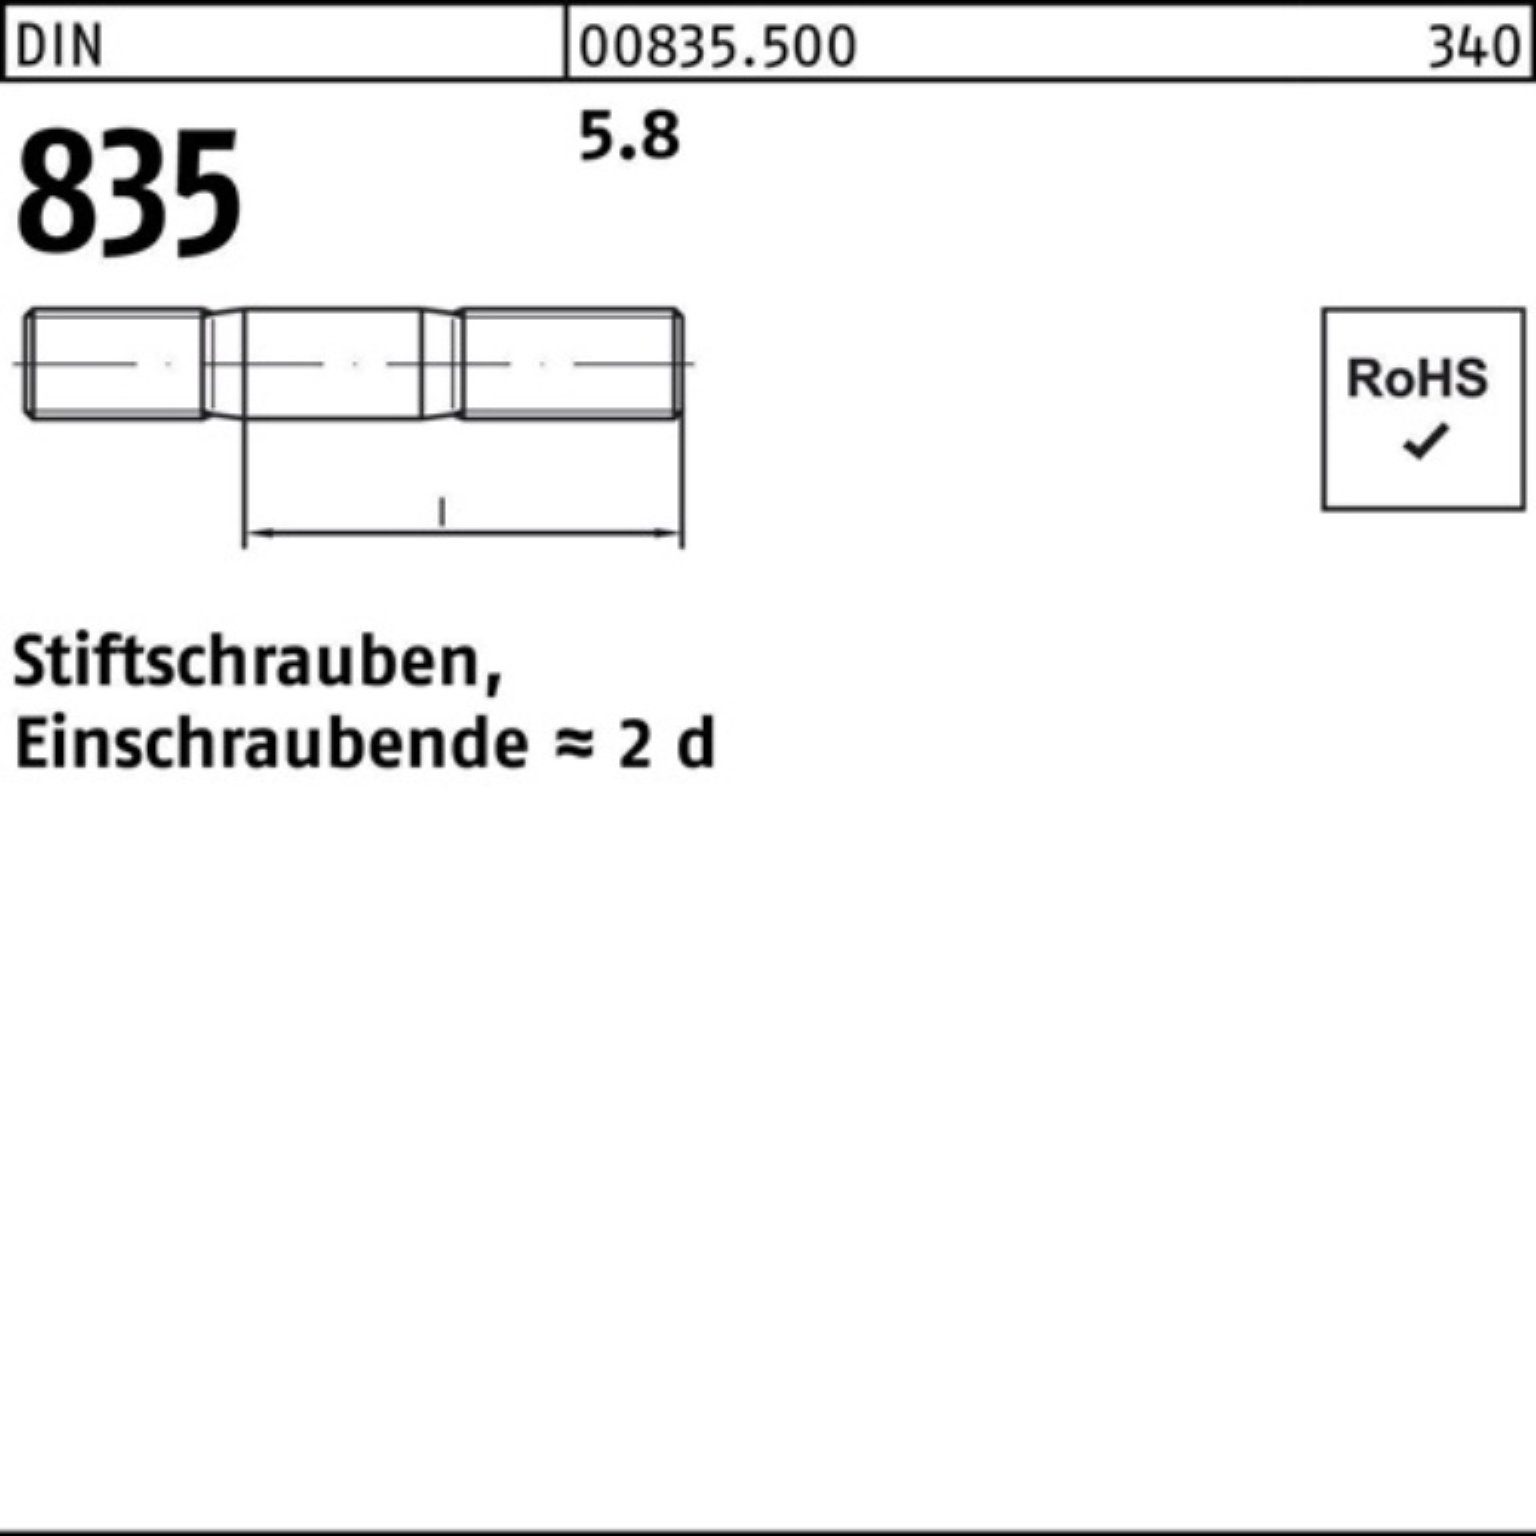 Stiftschraube 100er M6x DIN Stiftschraube 835 Reyher Pack 35 100 Stü 5.8 Einschraubende=2d